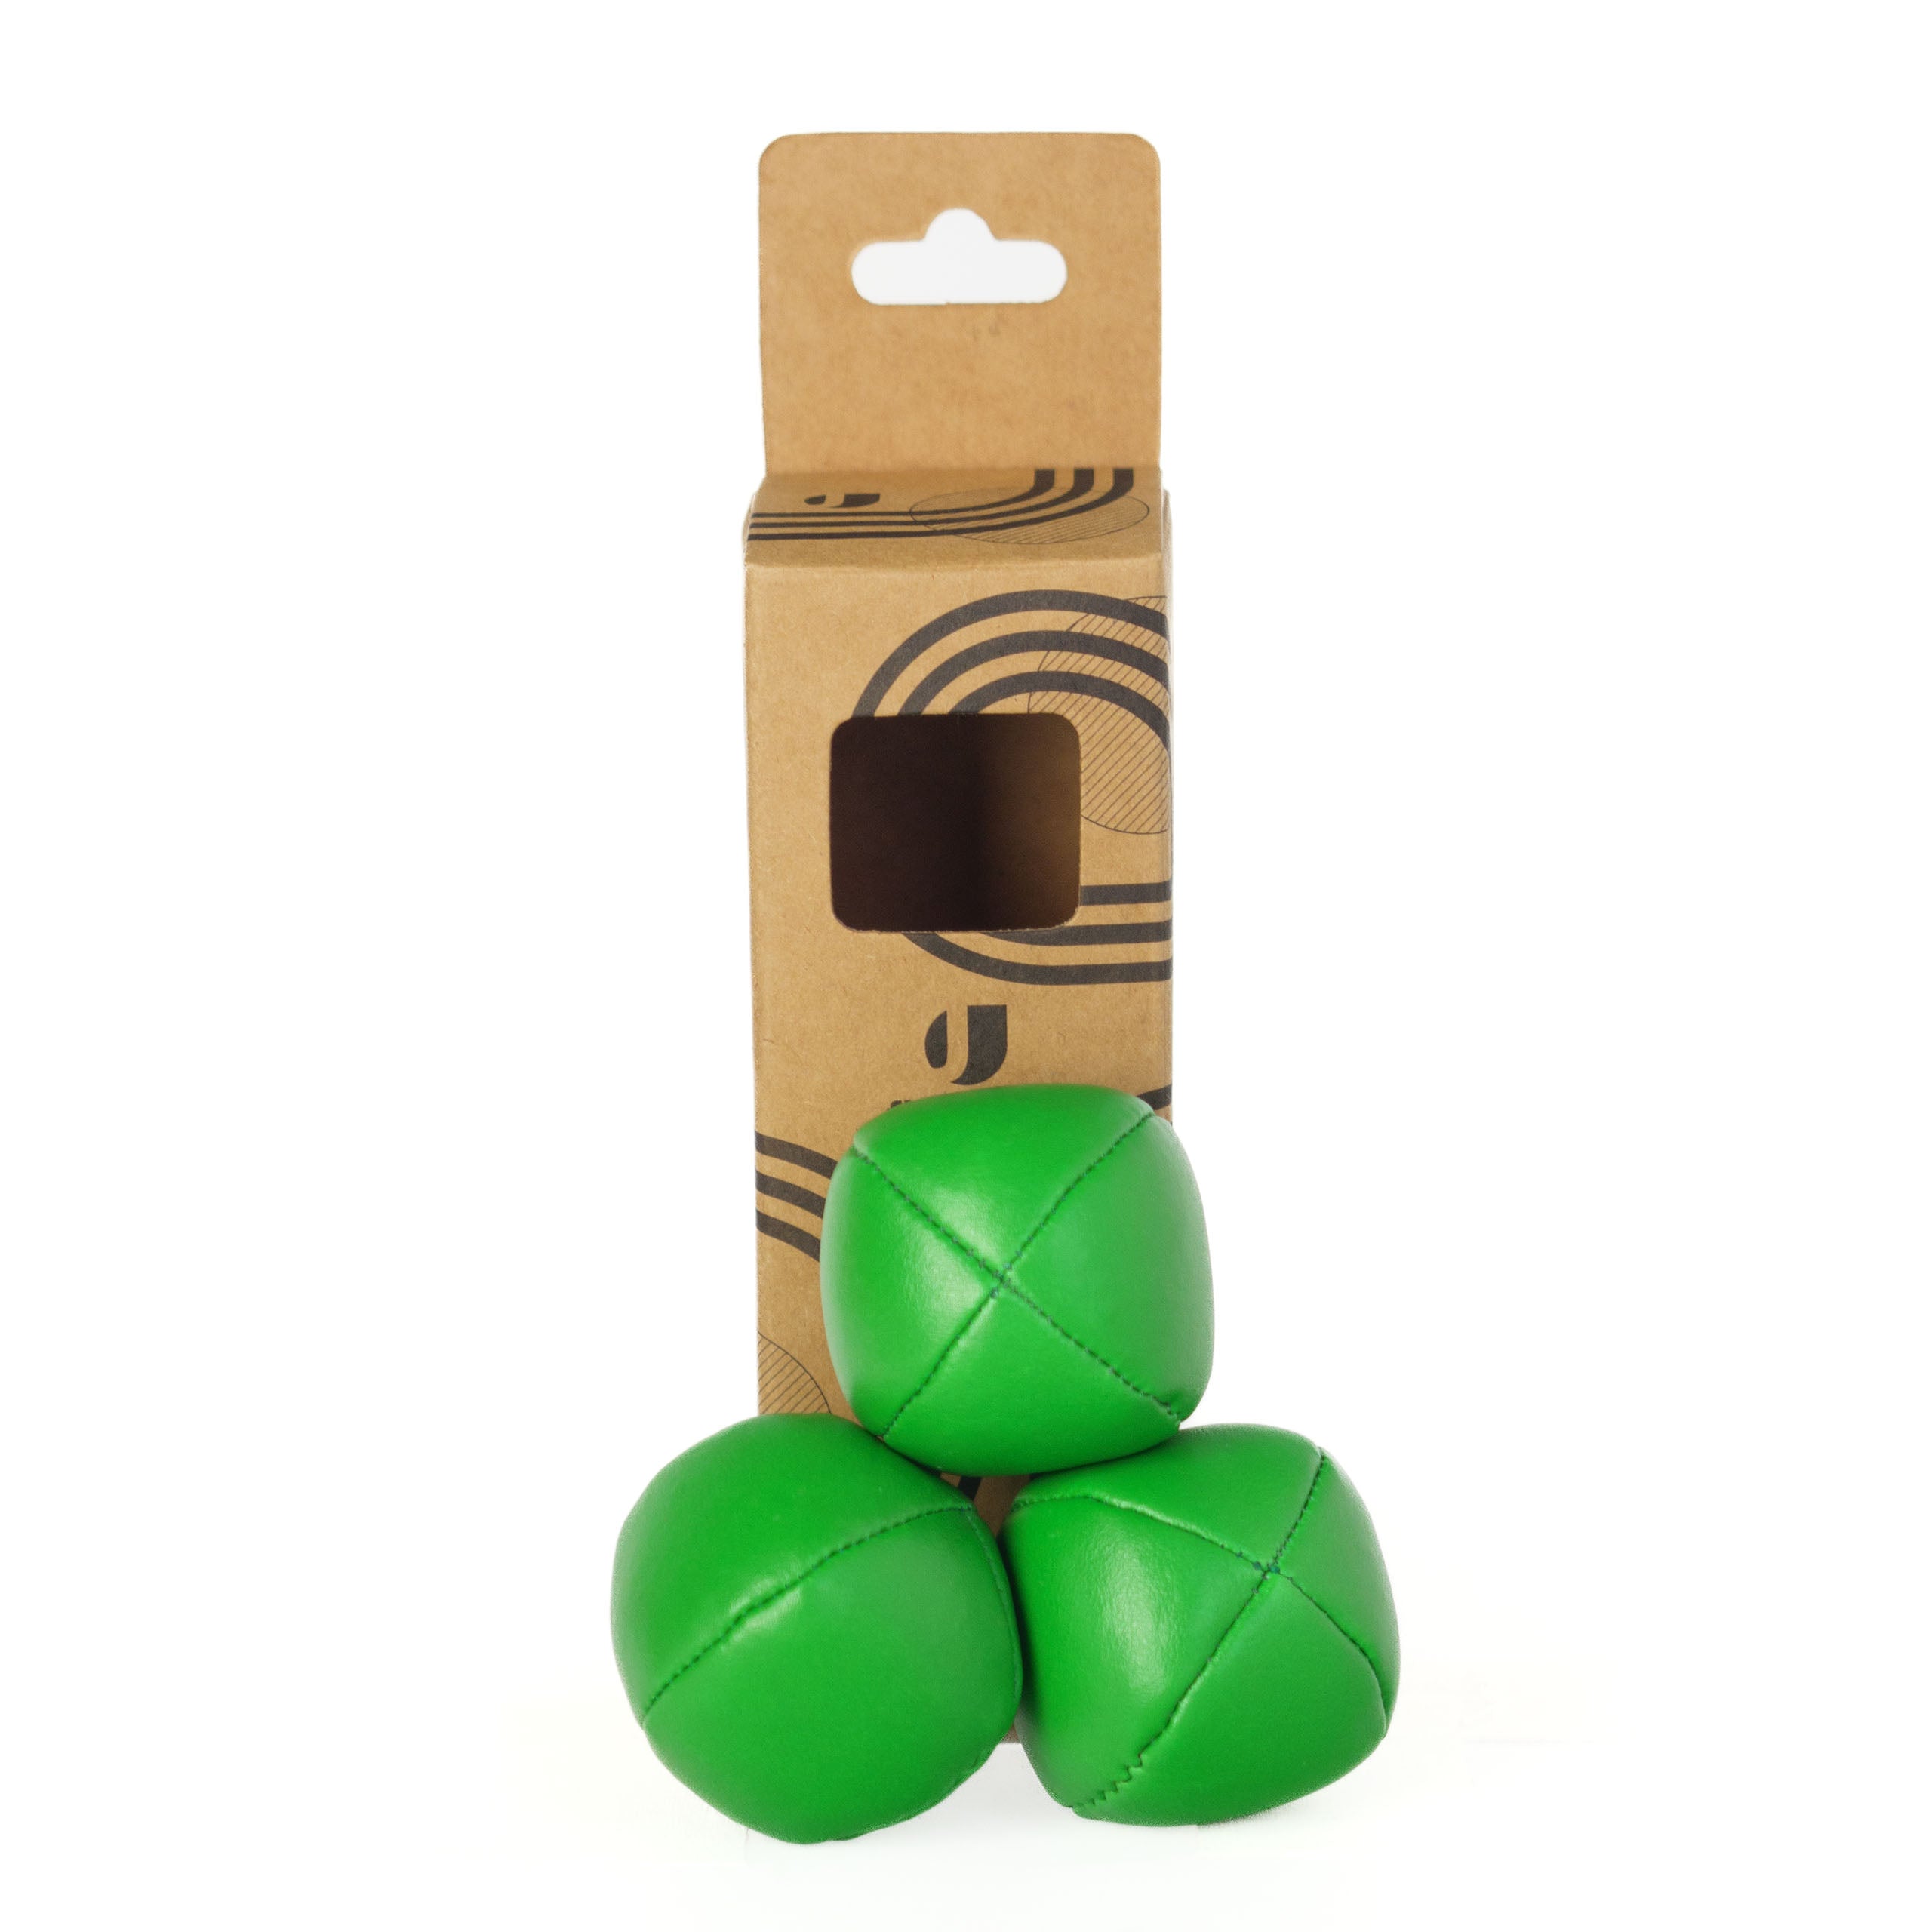 3 green balls